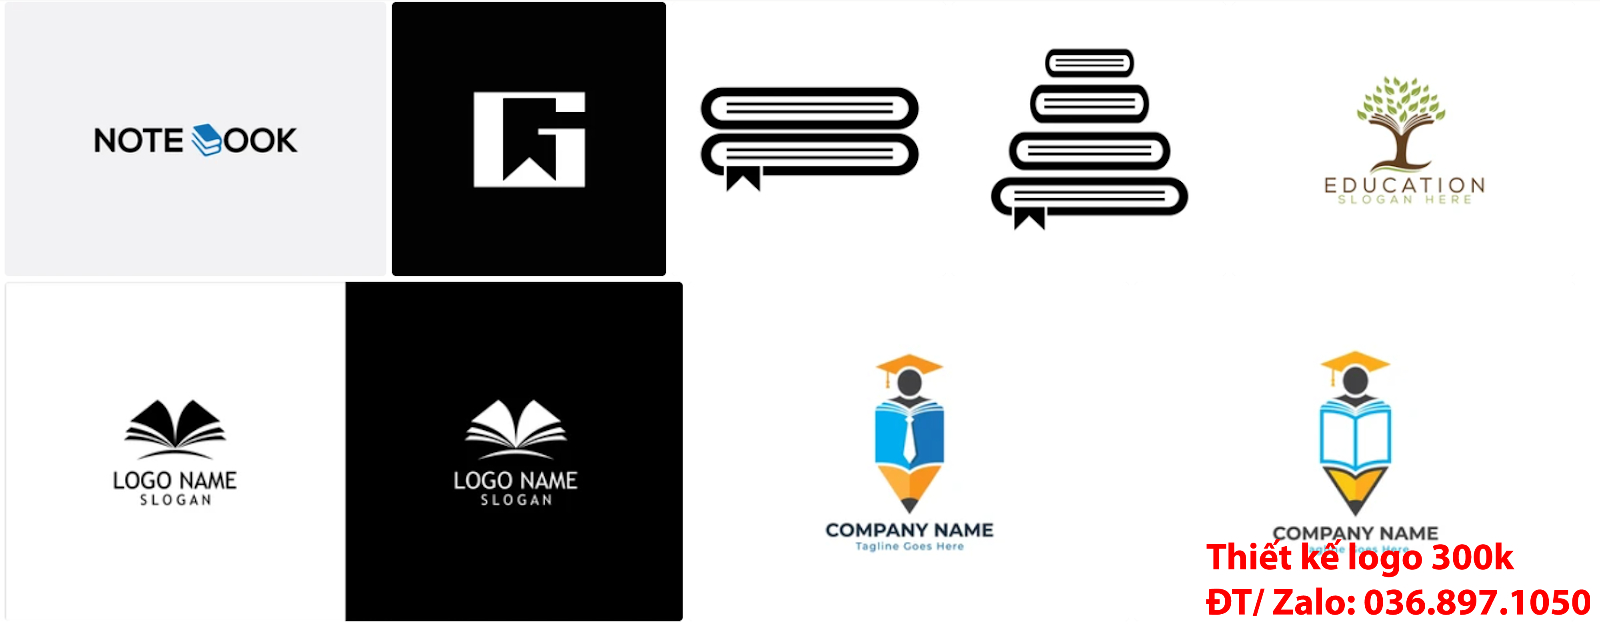 Công ty nhận tạo lô gô online chuyên nghiệp giá rẻ với chủ đề Mẫu logo nhà sách đơn giản tinh tế chất lượng